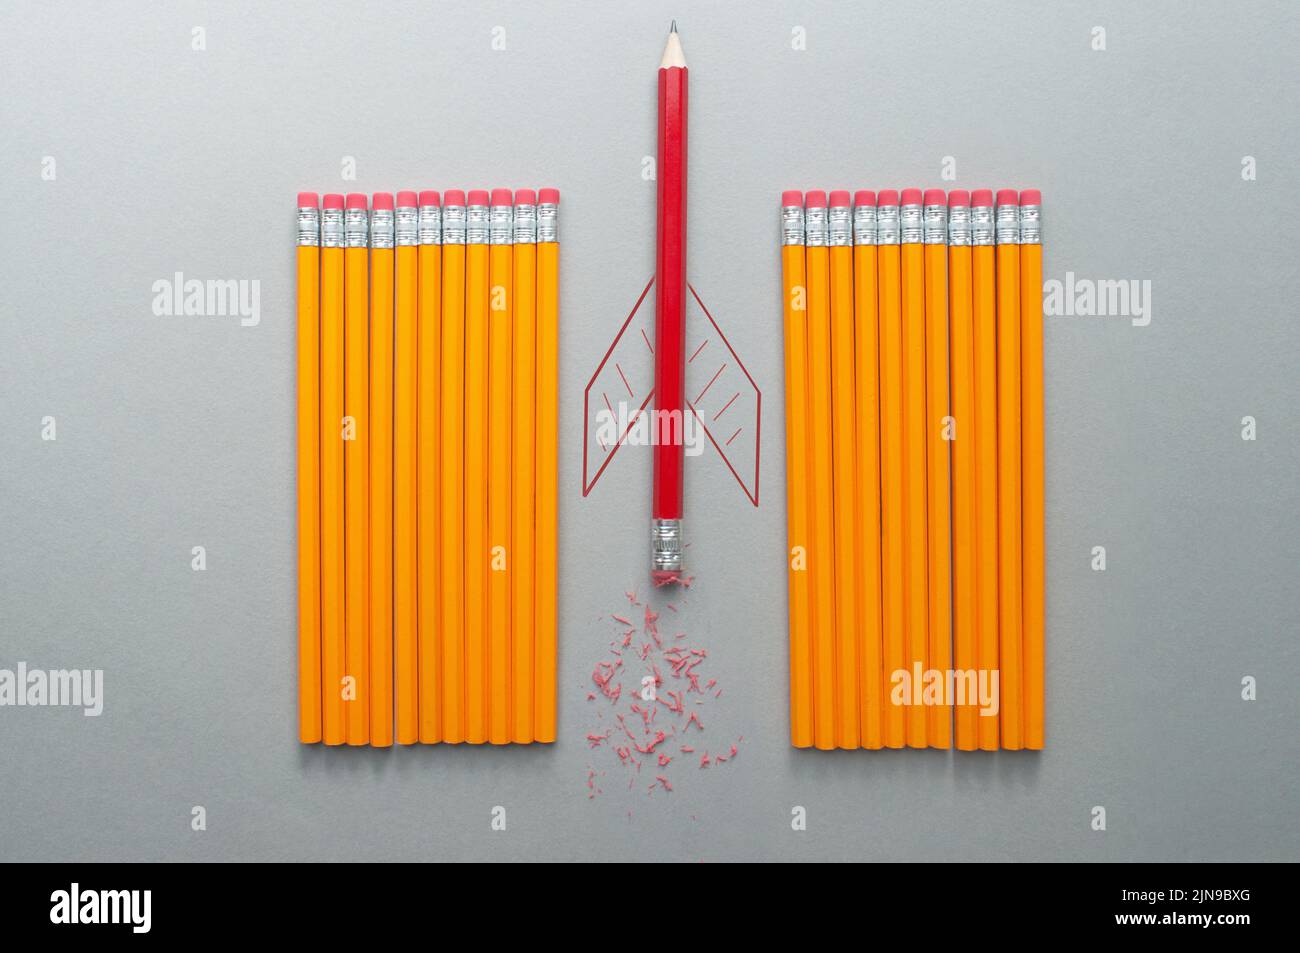 Lápiz rojo con boceto de cohete que sobresale entre una fila de lápices naranjas Foto de stock